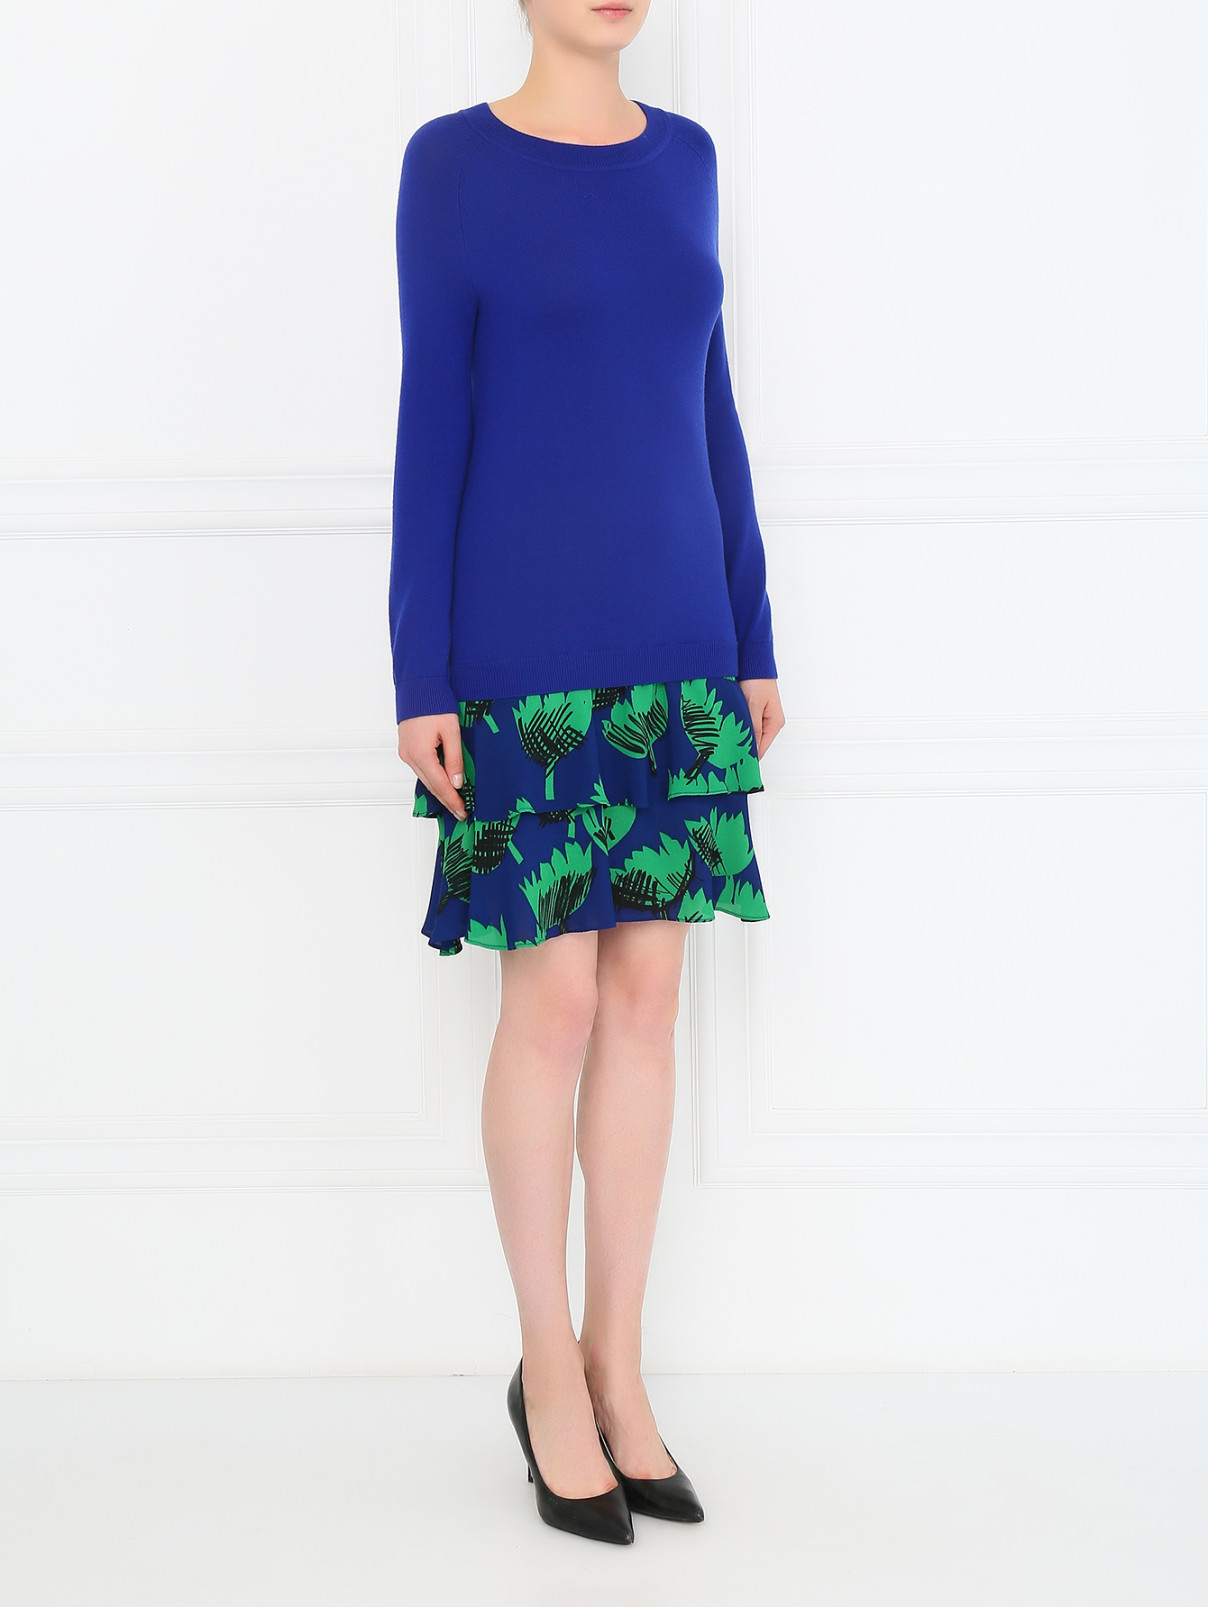 Платье из шерсти с асимметричным низом Moschino Boutique  –  Модель Общий вид  – Цвет:  Синий